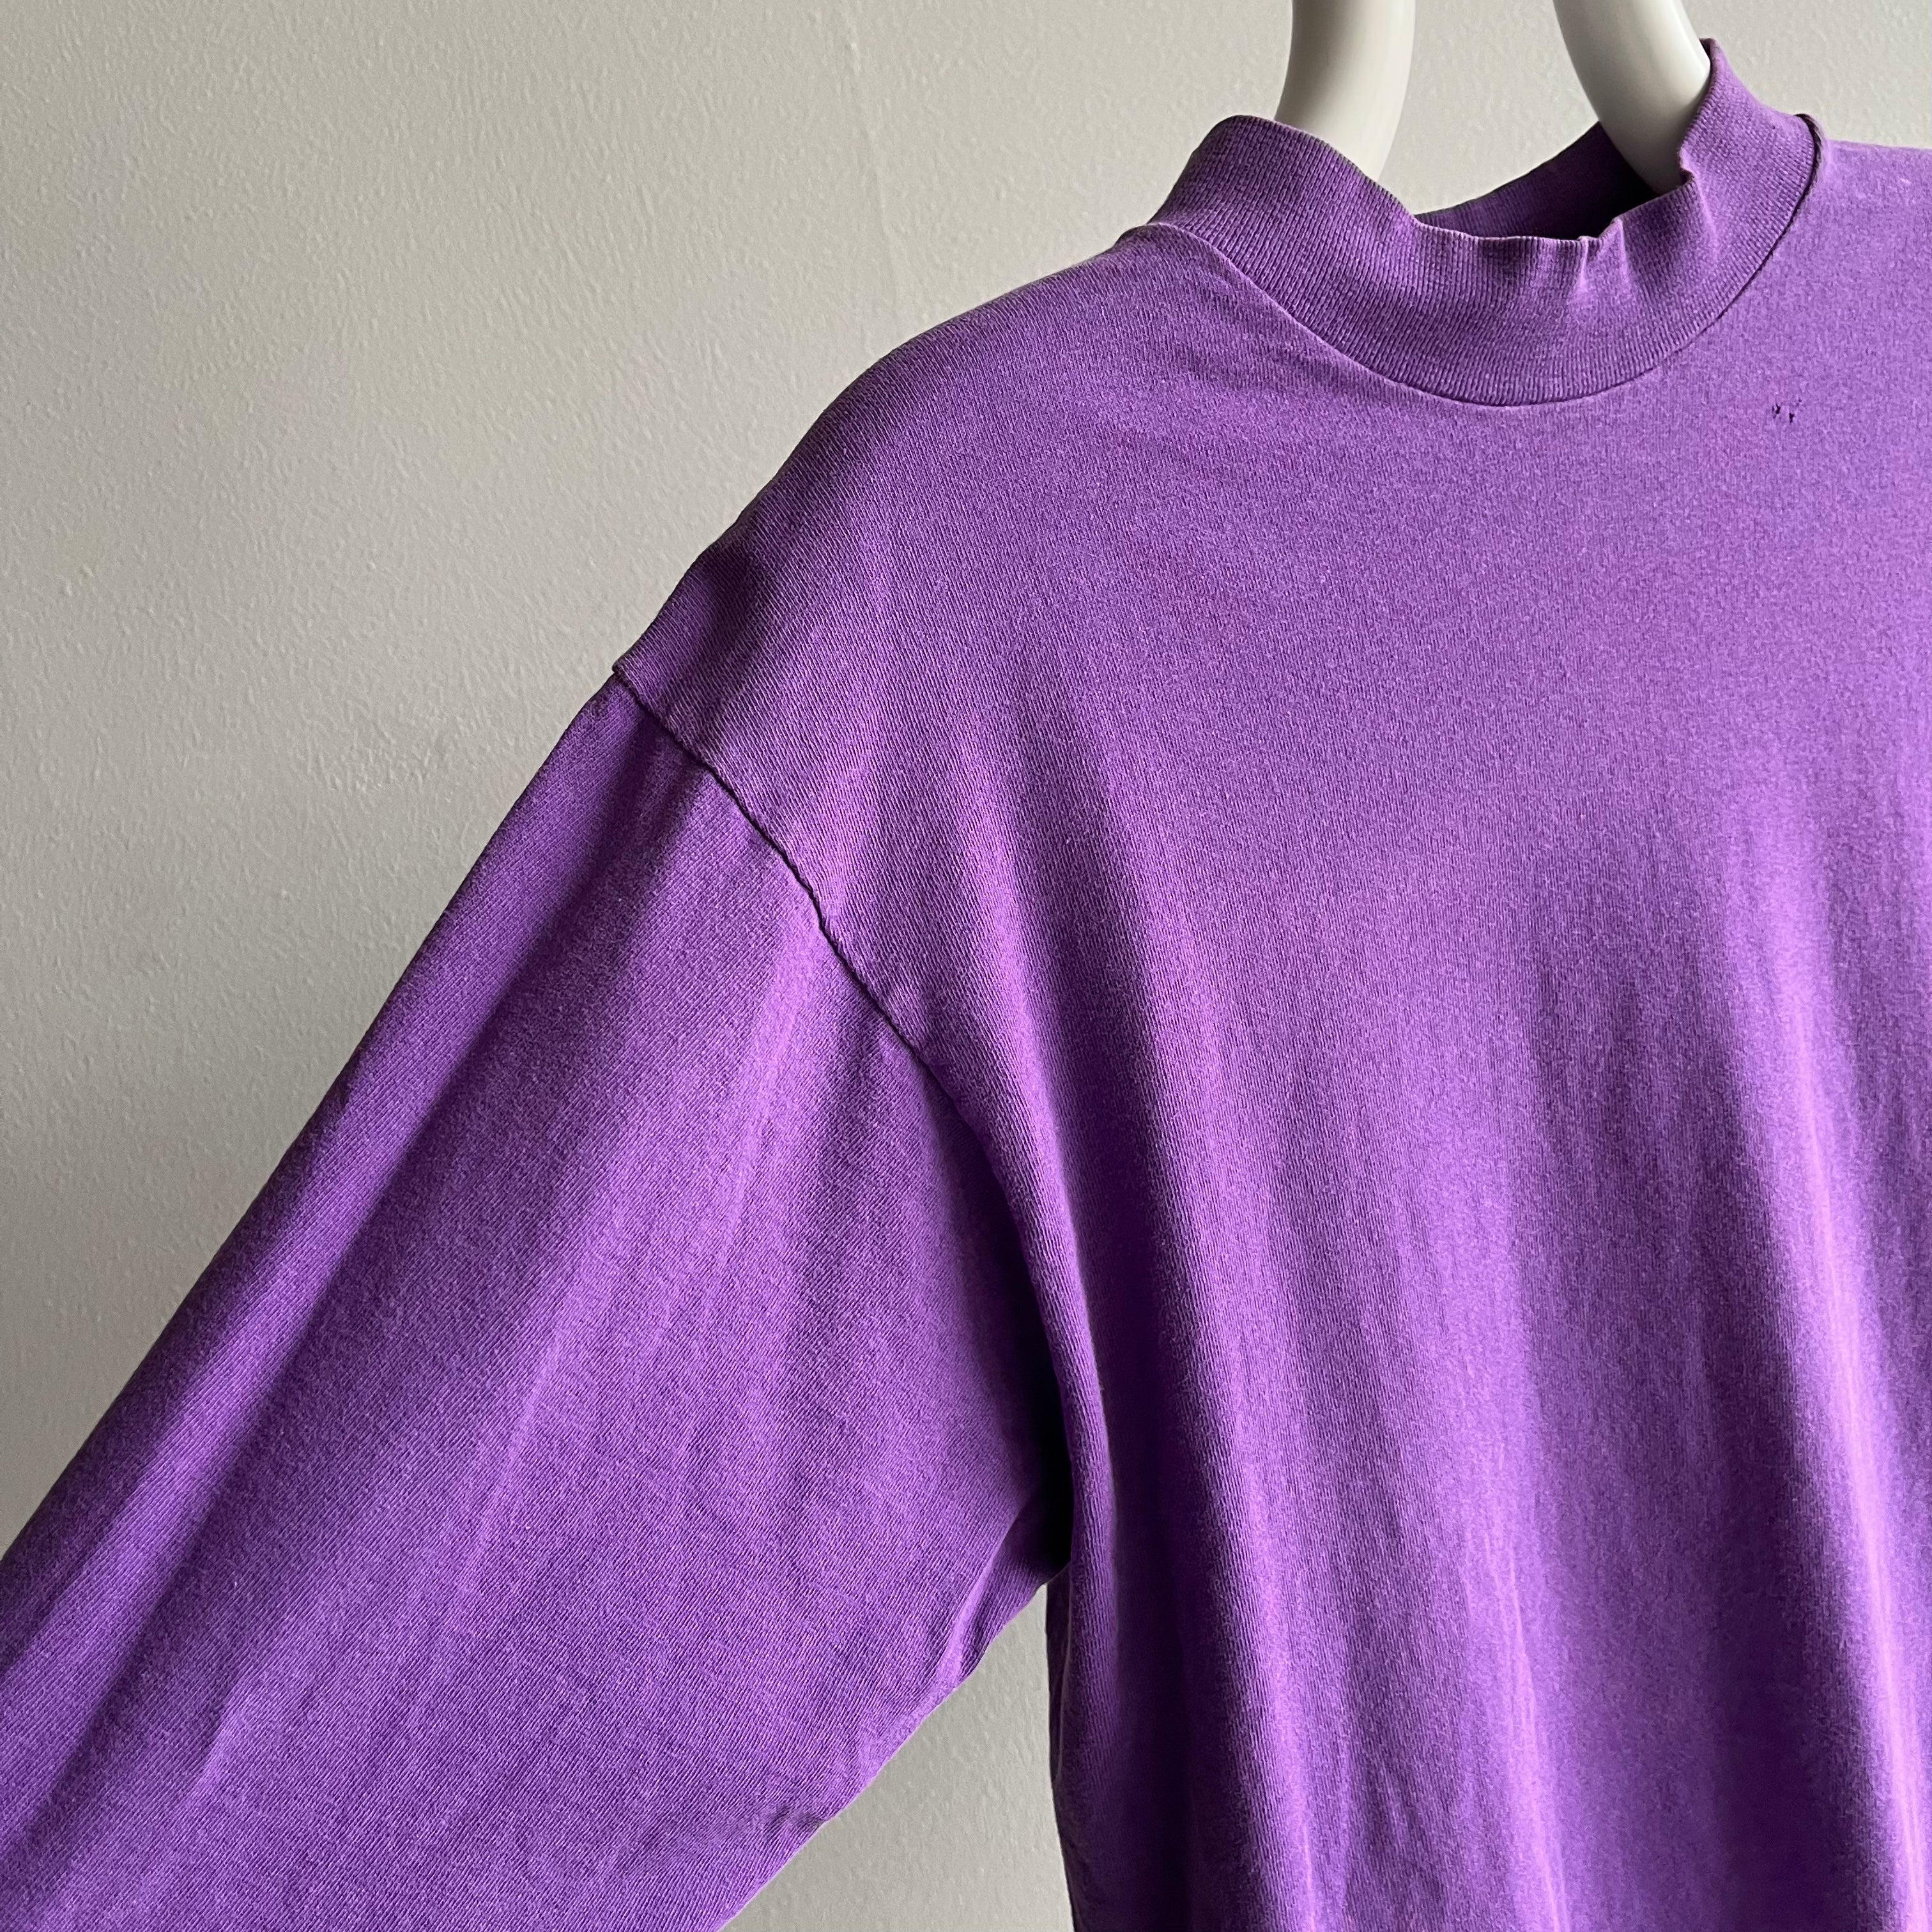 1980s Faded Purple Mock Neck Long Sleeve T-Shirt by FOTL